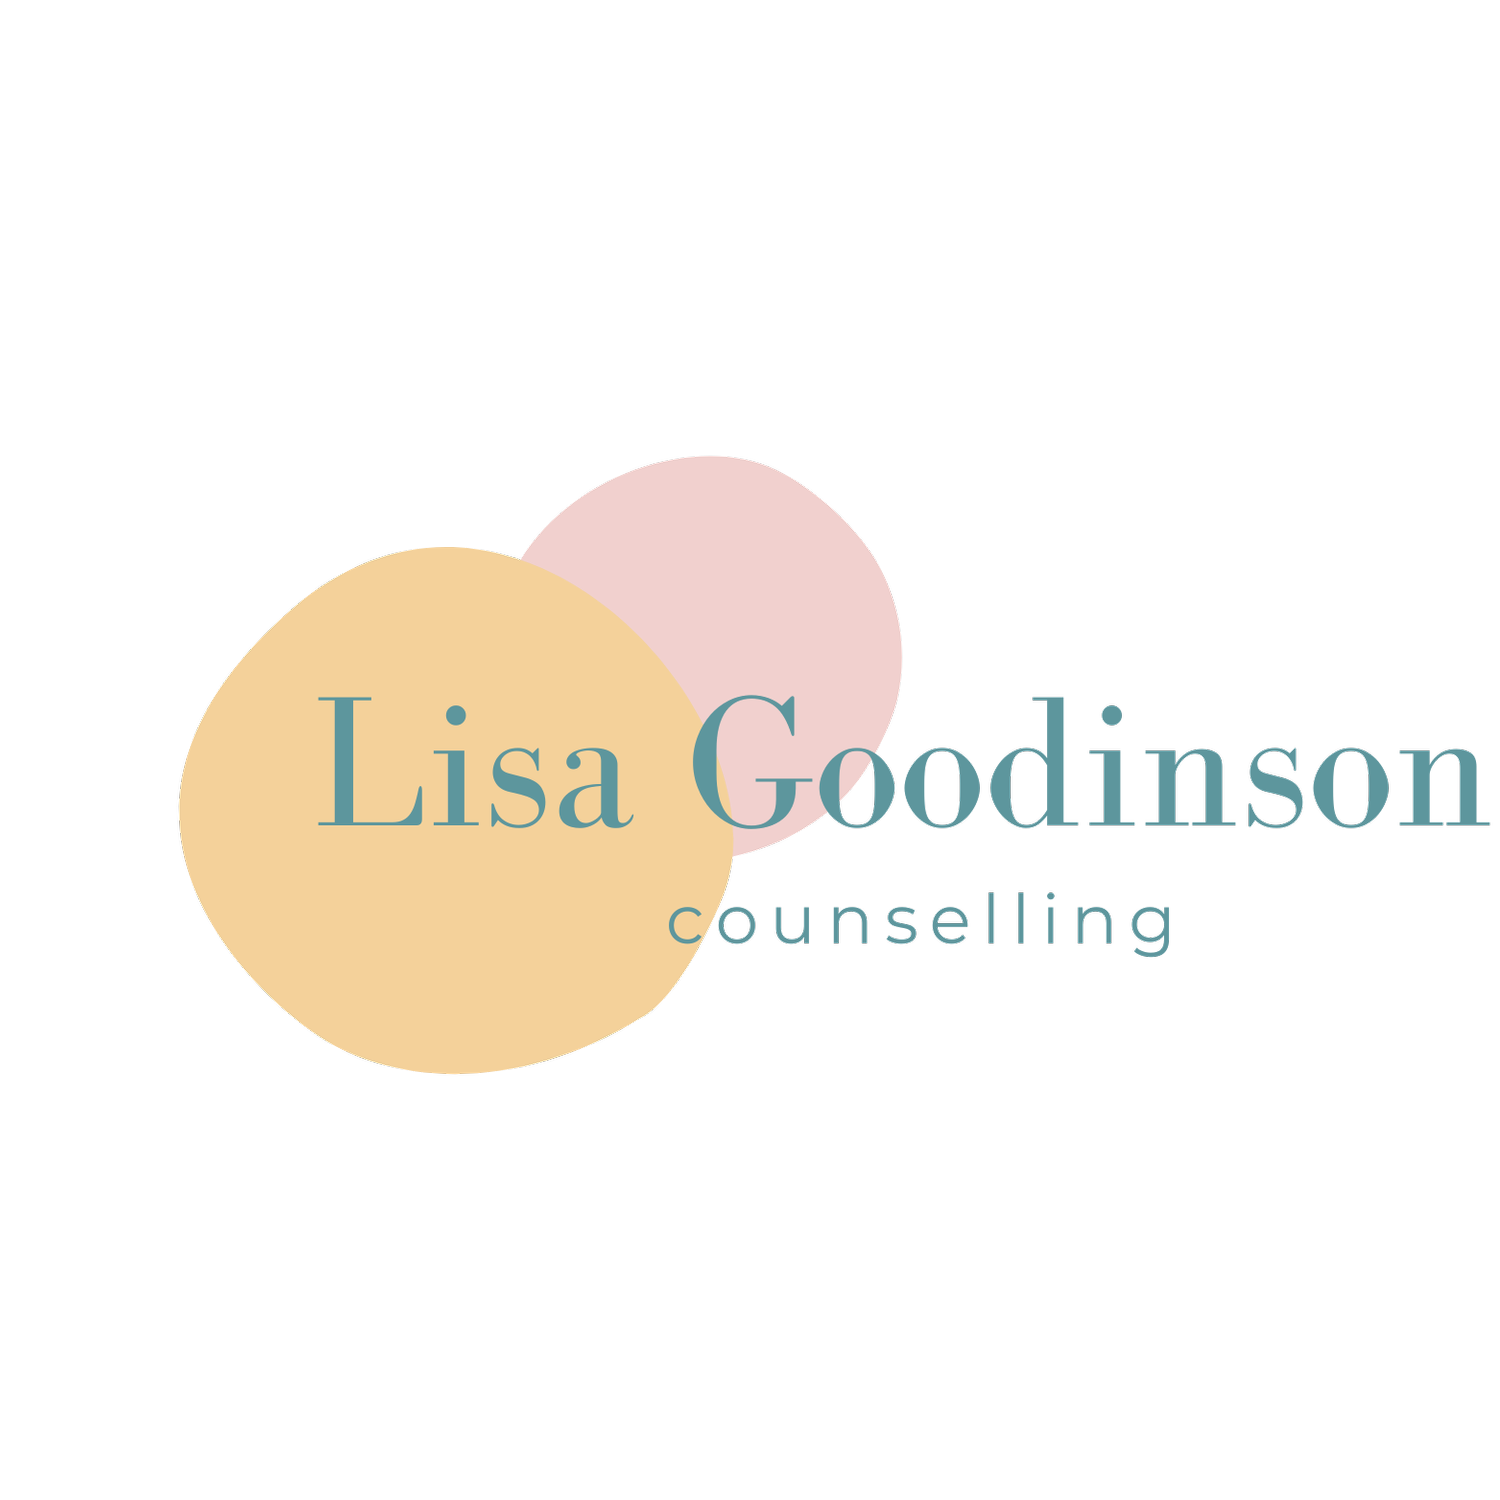 Lisa Goodinson Counselling